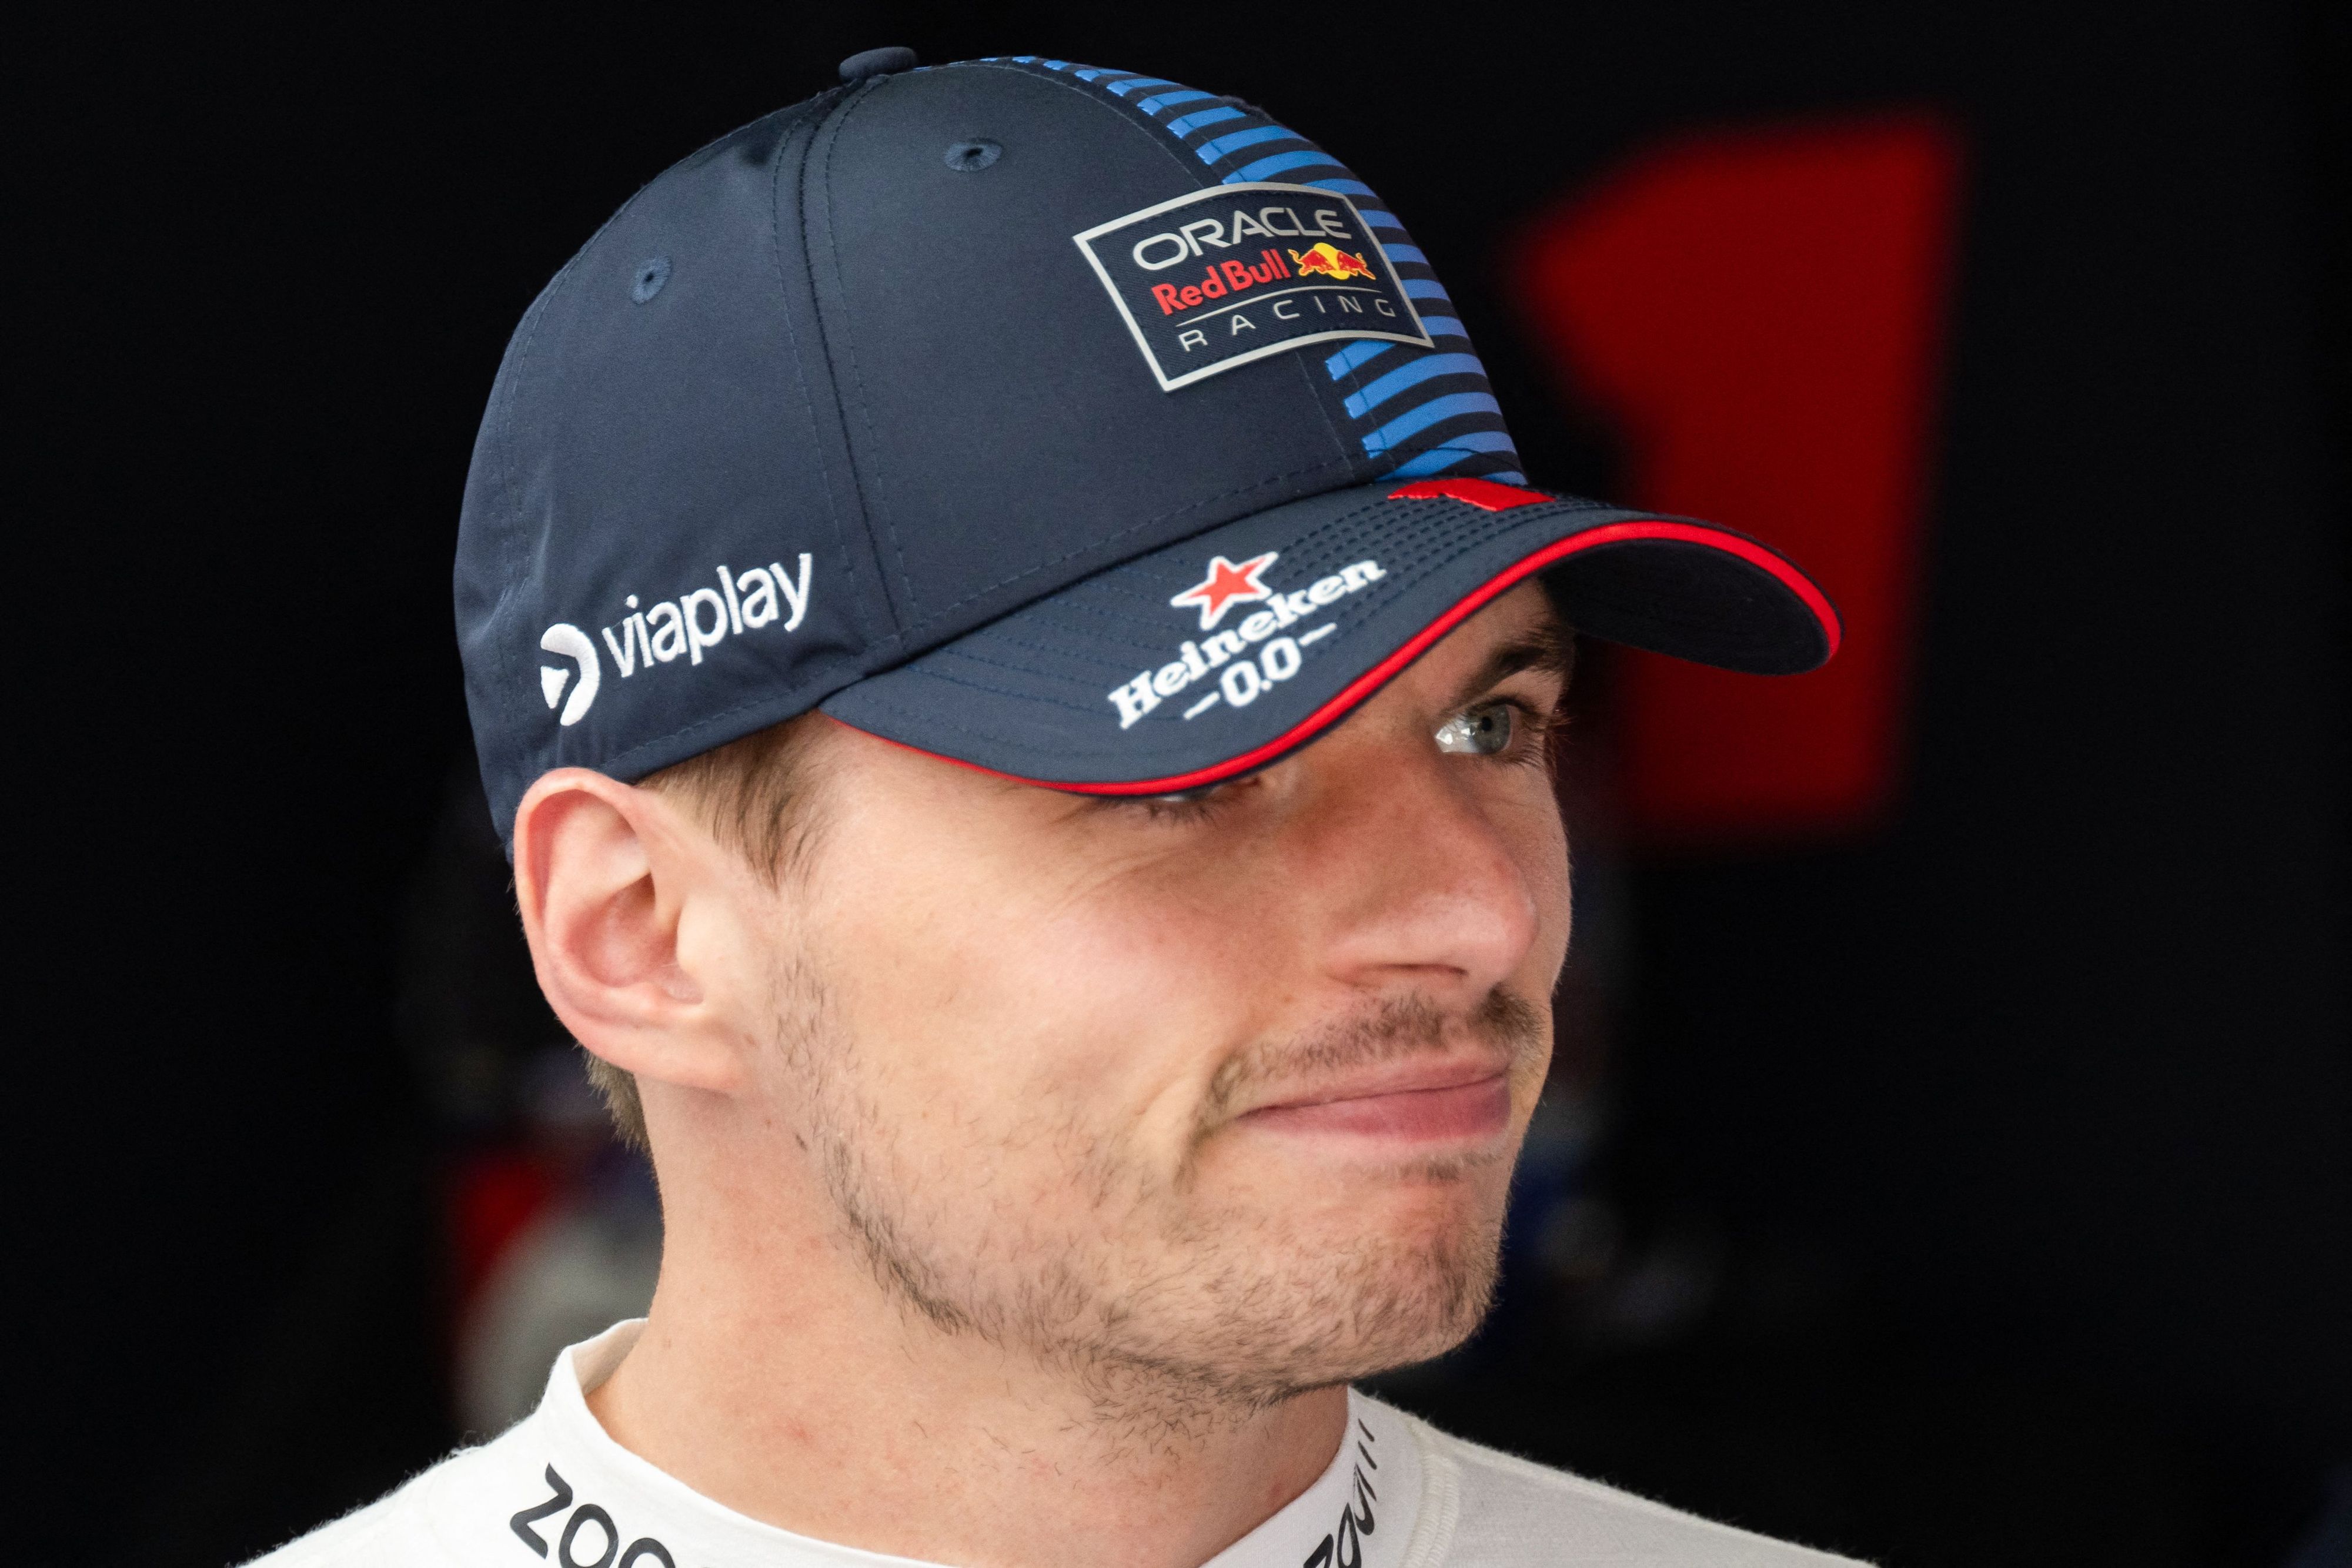 Verstappen rejoint une course virtuelle un jour de Grand Prix